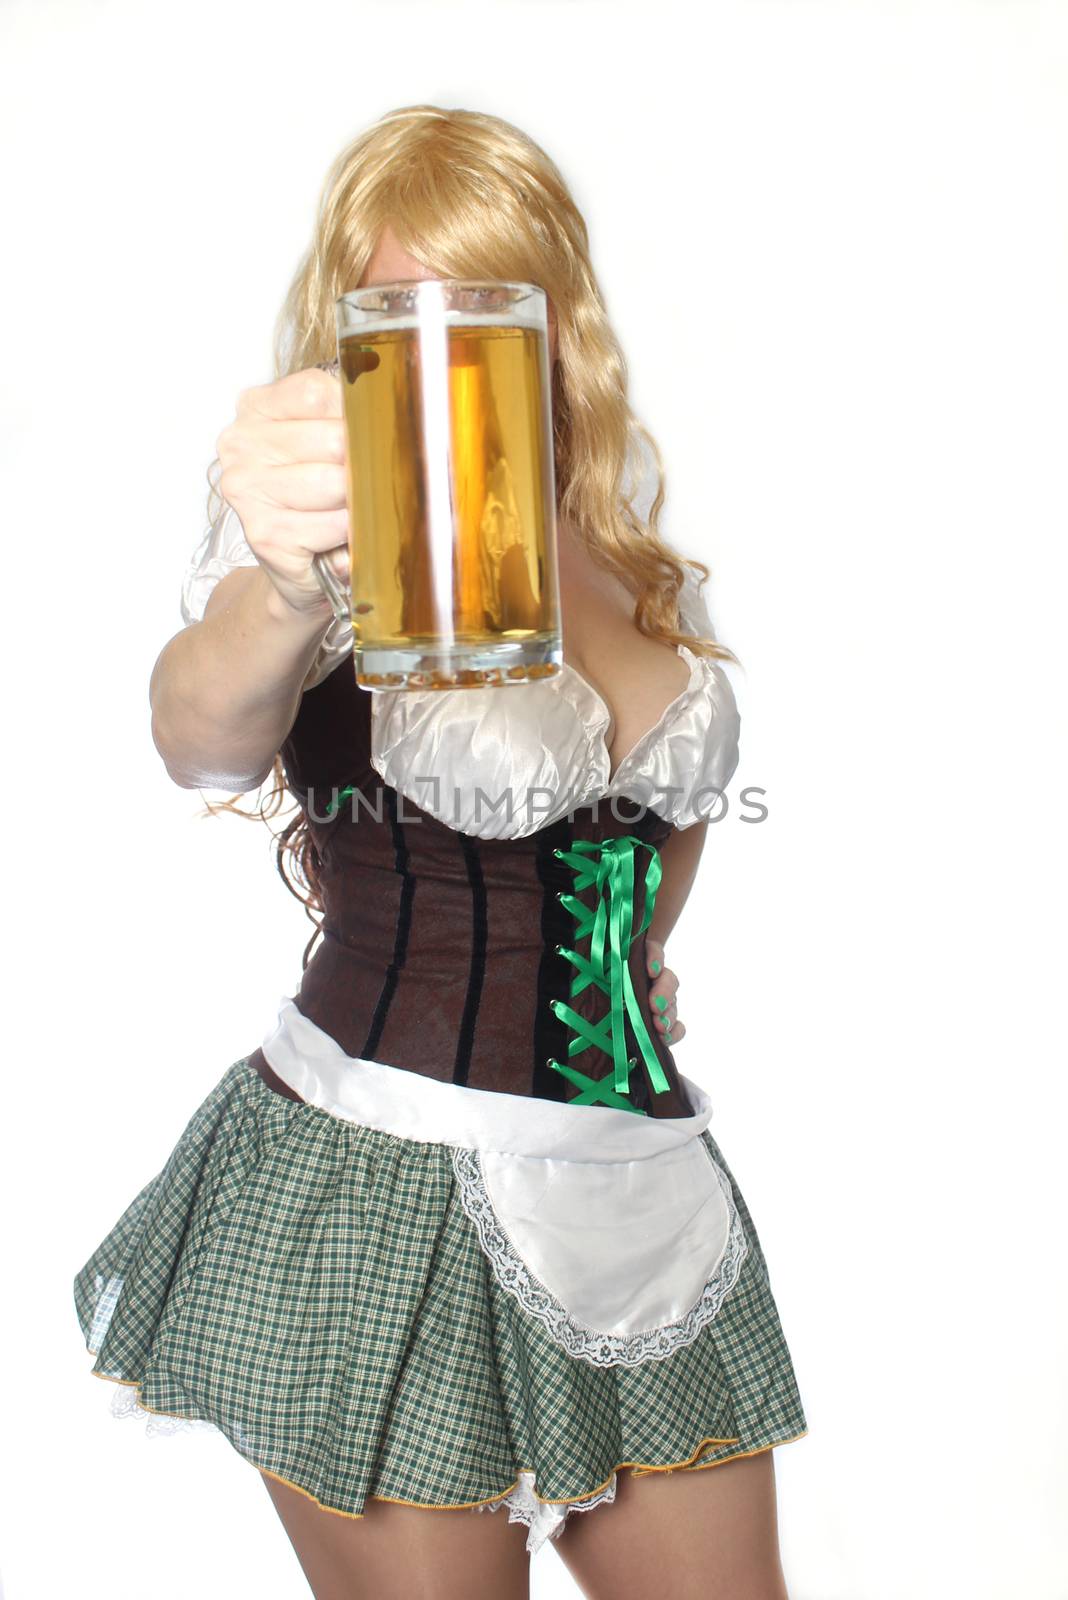 Tavern Waitress With Beer Mug Isolated on White Background